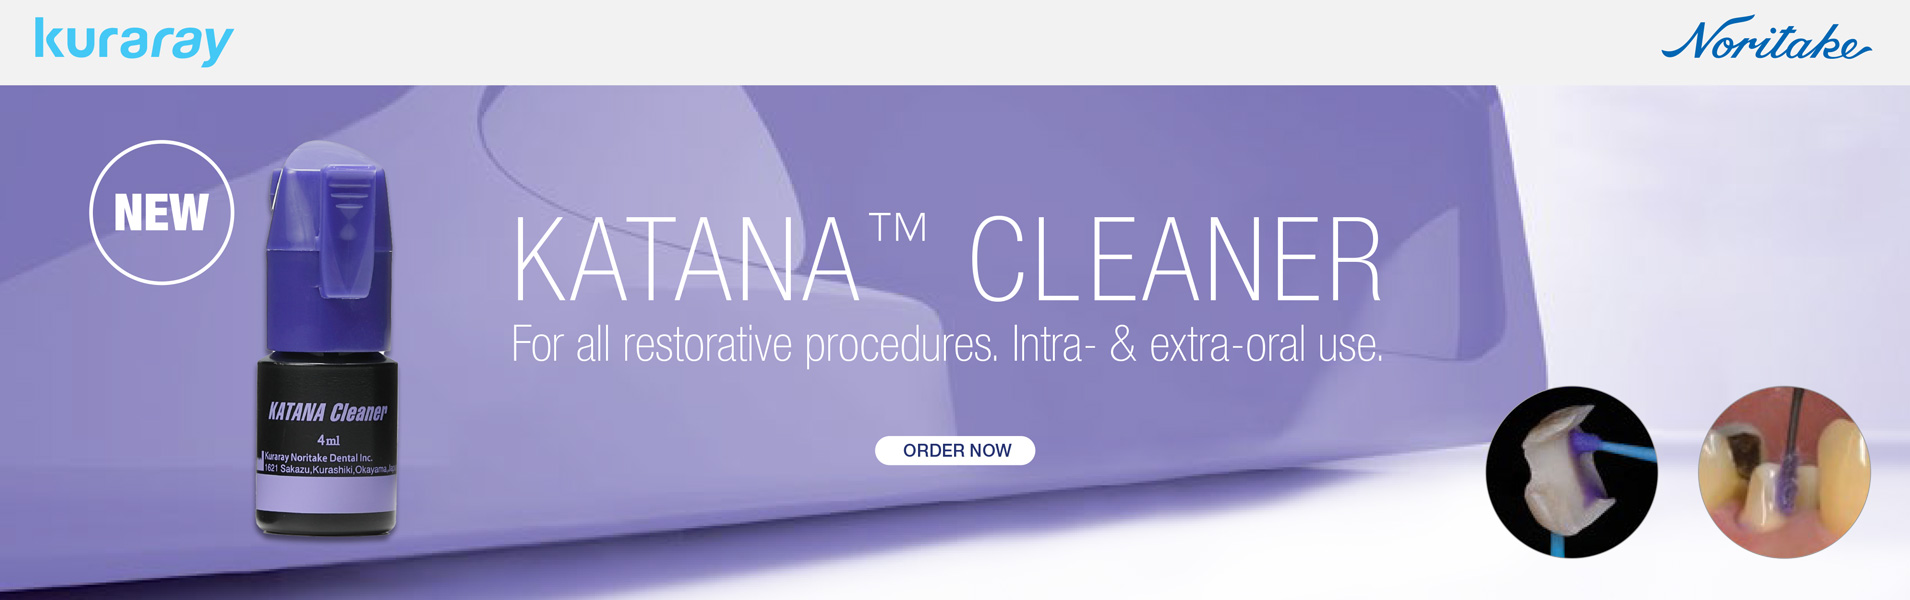 Introducing KATANA Cleaner